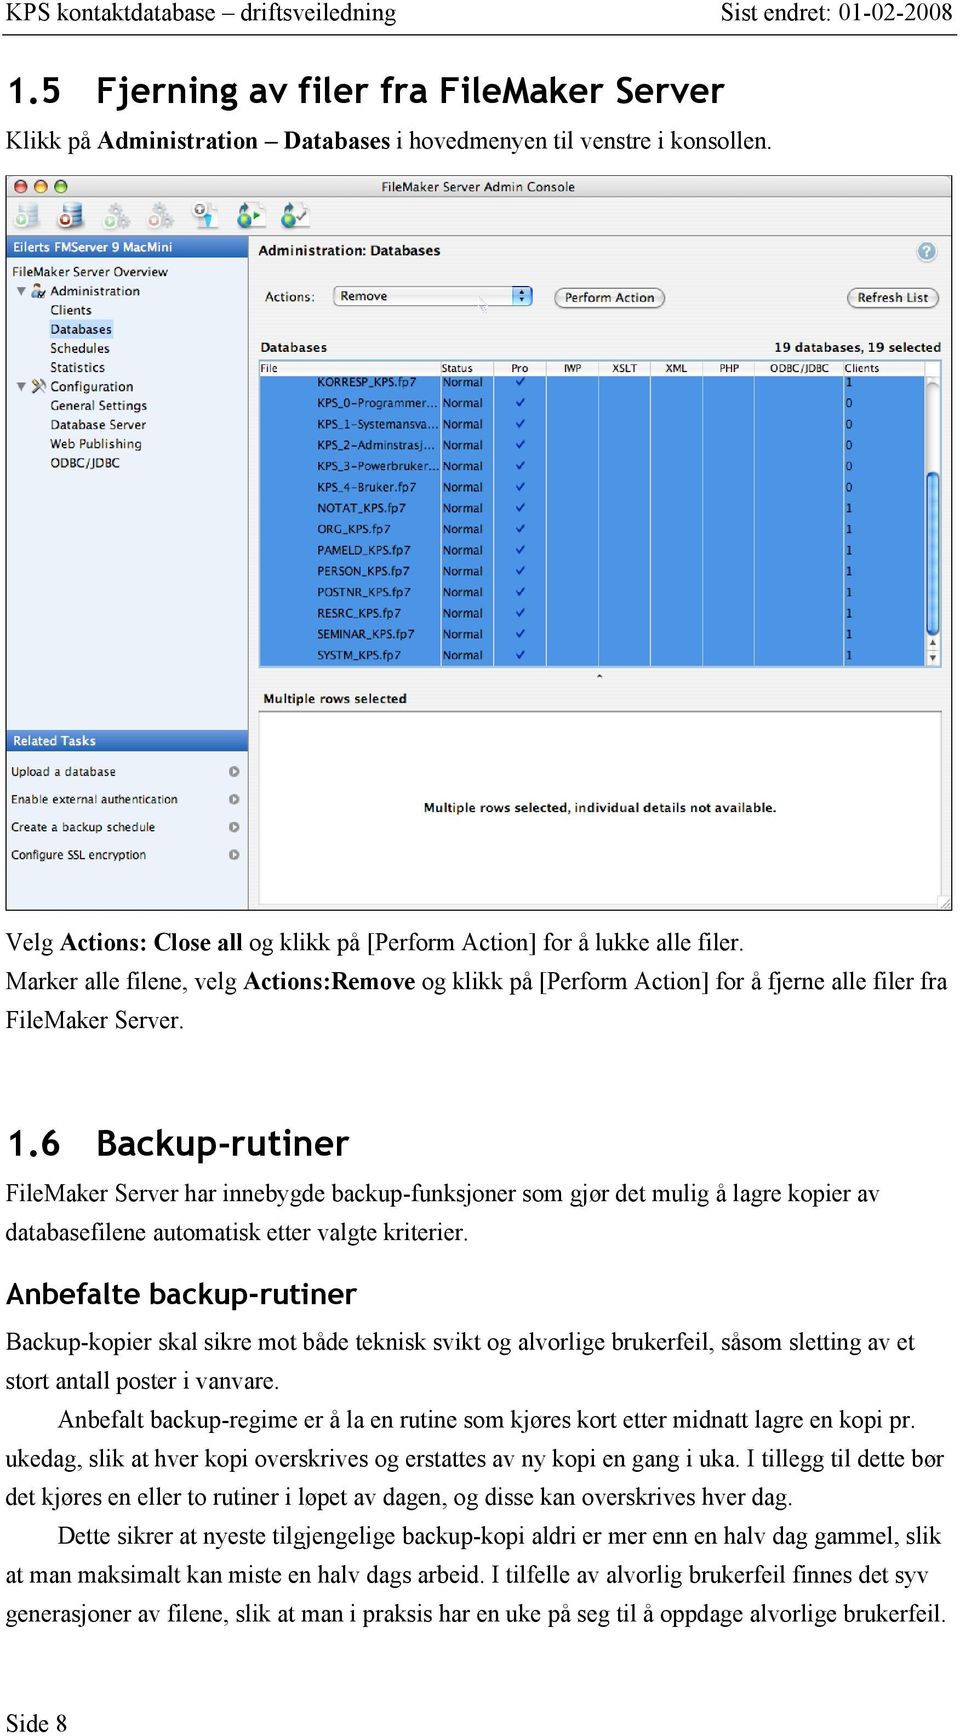 6 Backup-rutiner FileMaker Server har innebygde backup-funksjoner som gjør det mulig å lagre kopier av databasefilene automatisk etter valgte kriterier.